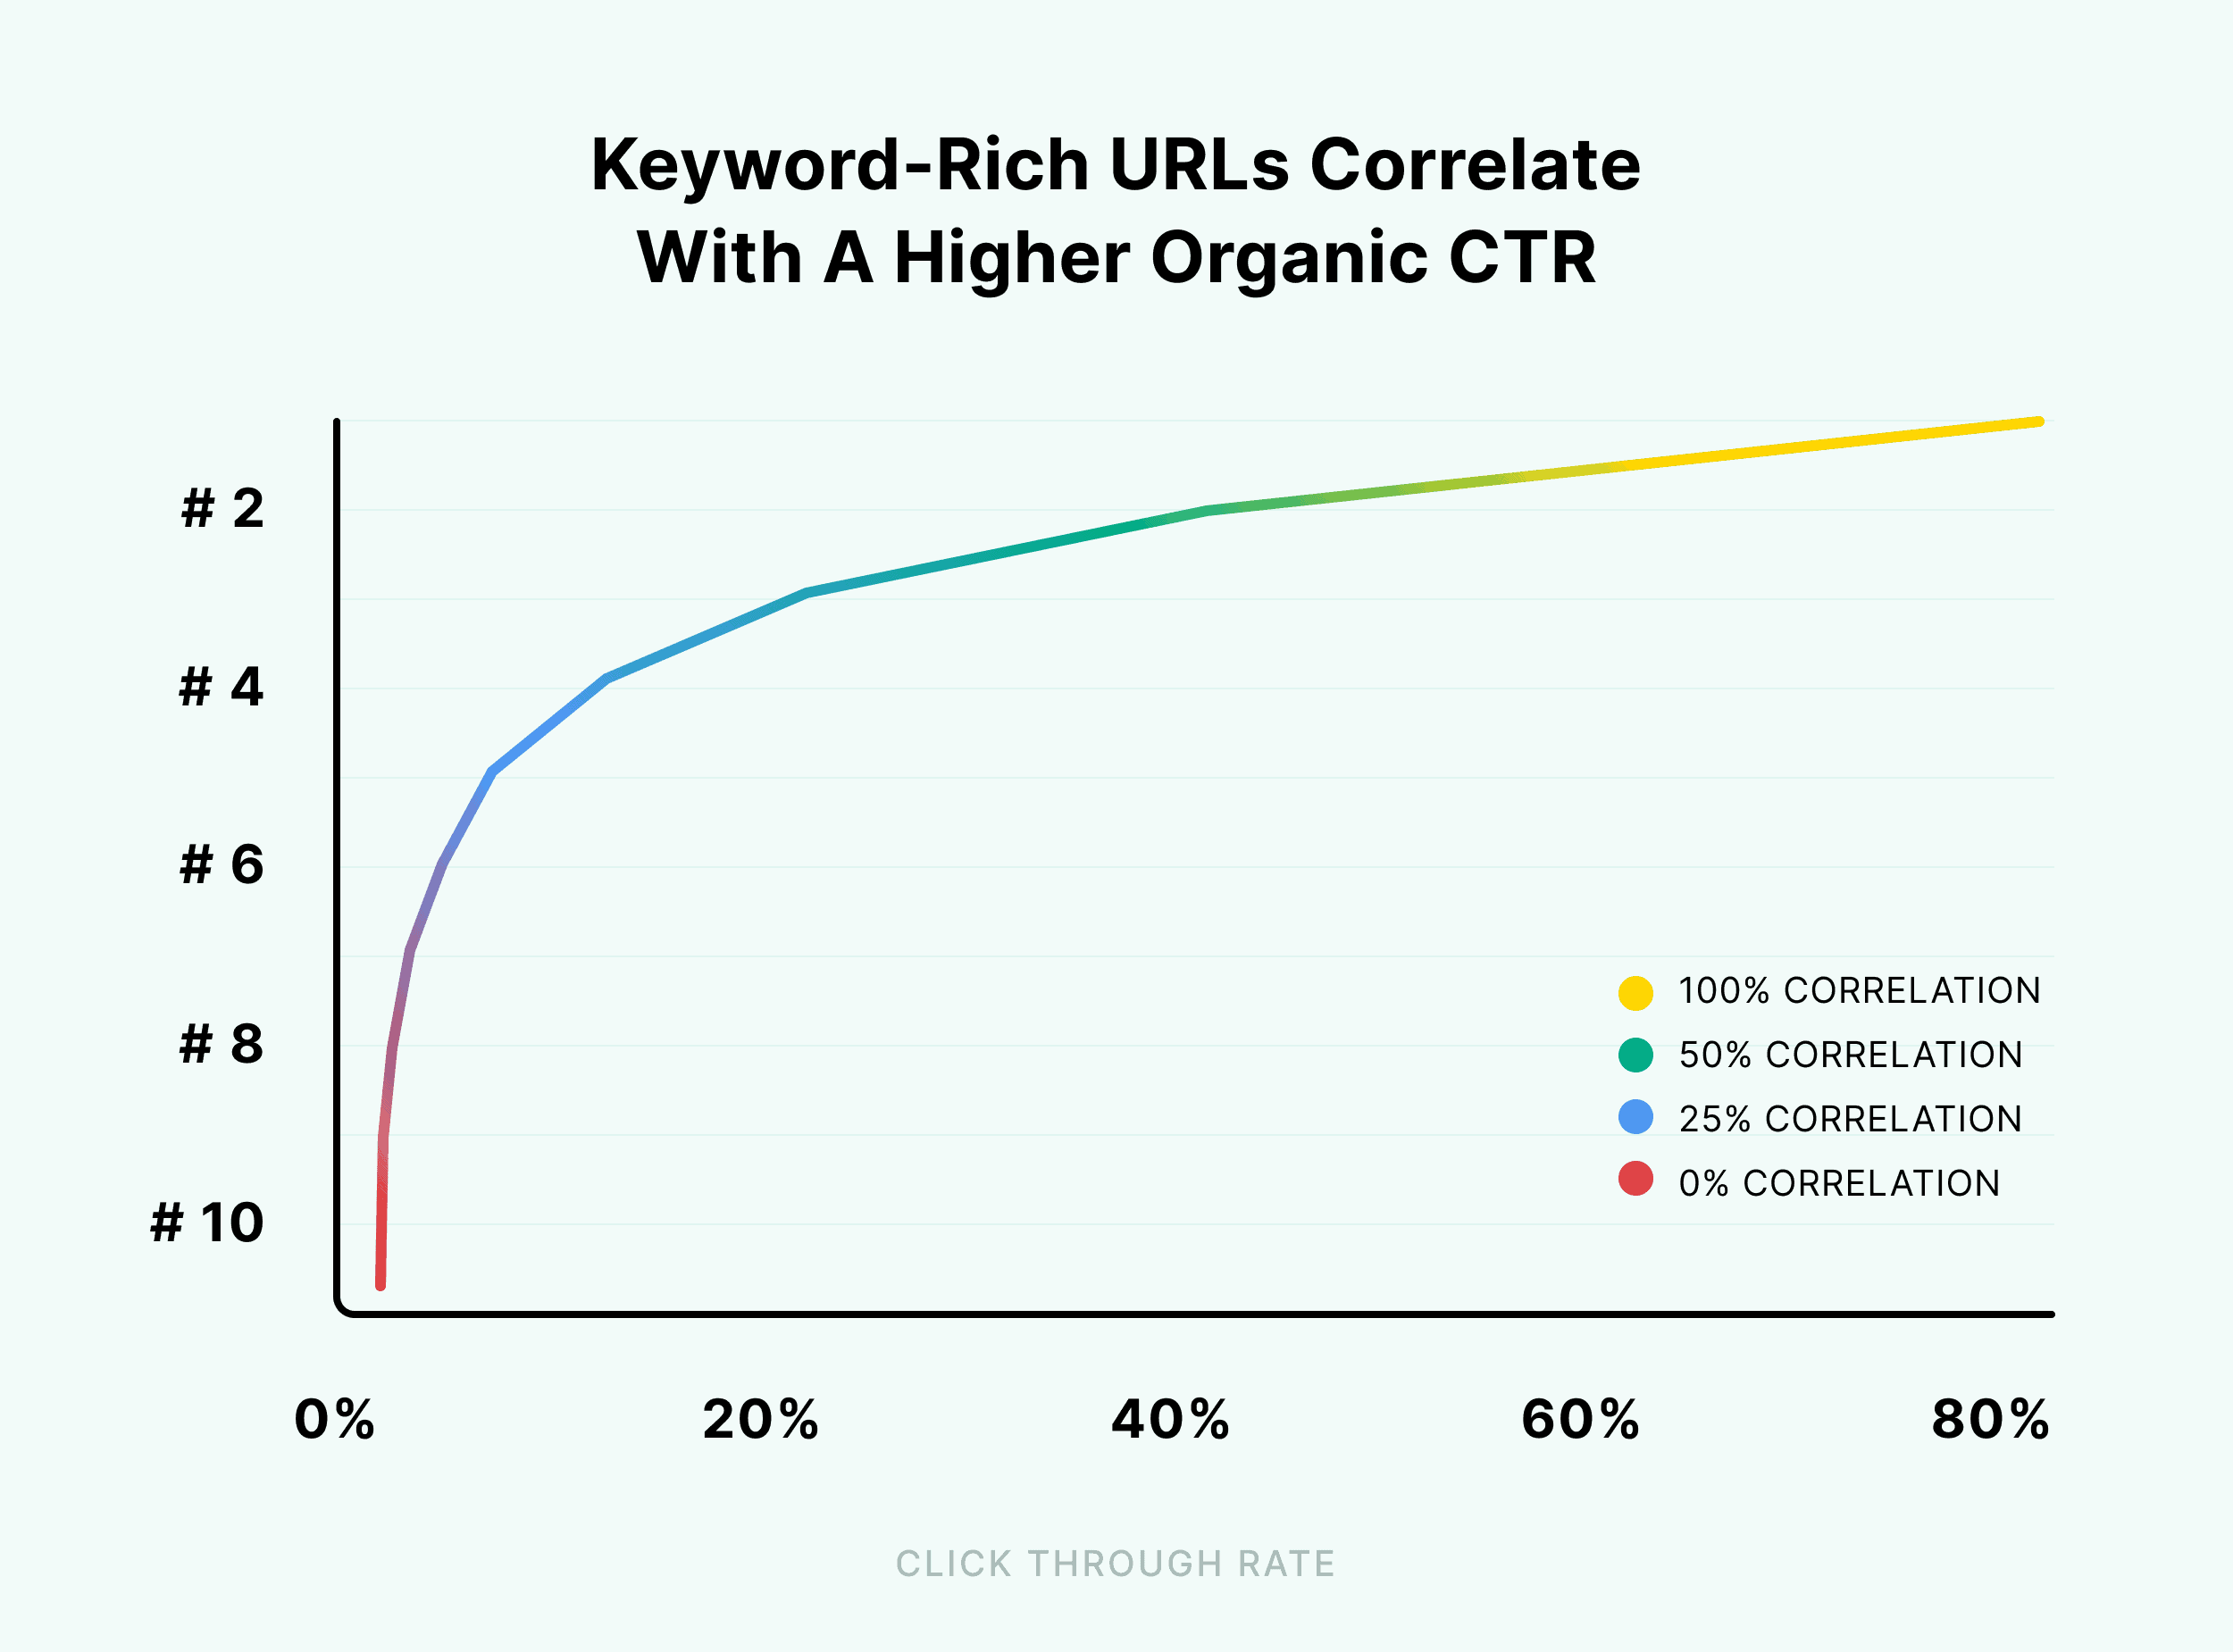 Keyword-rich URLs correlate with a higher organic CTR